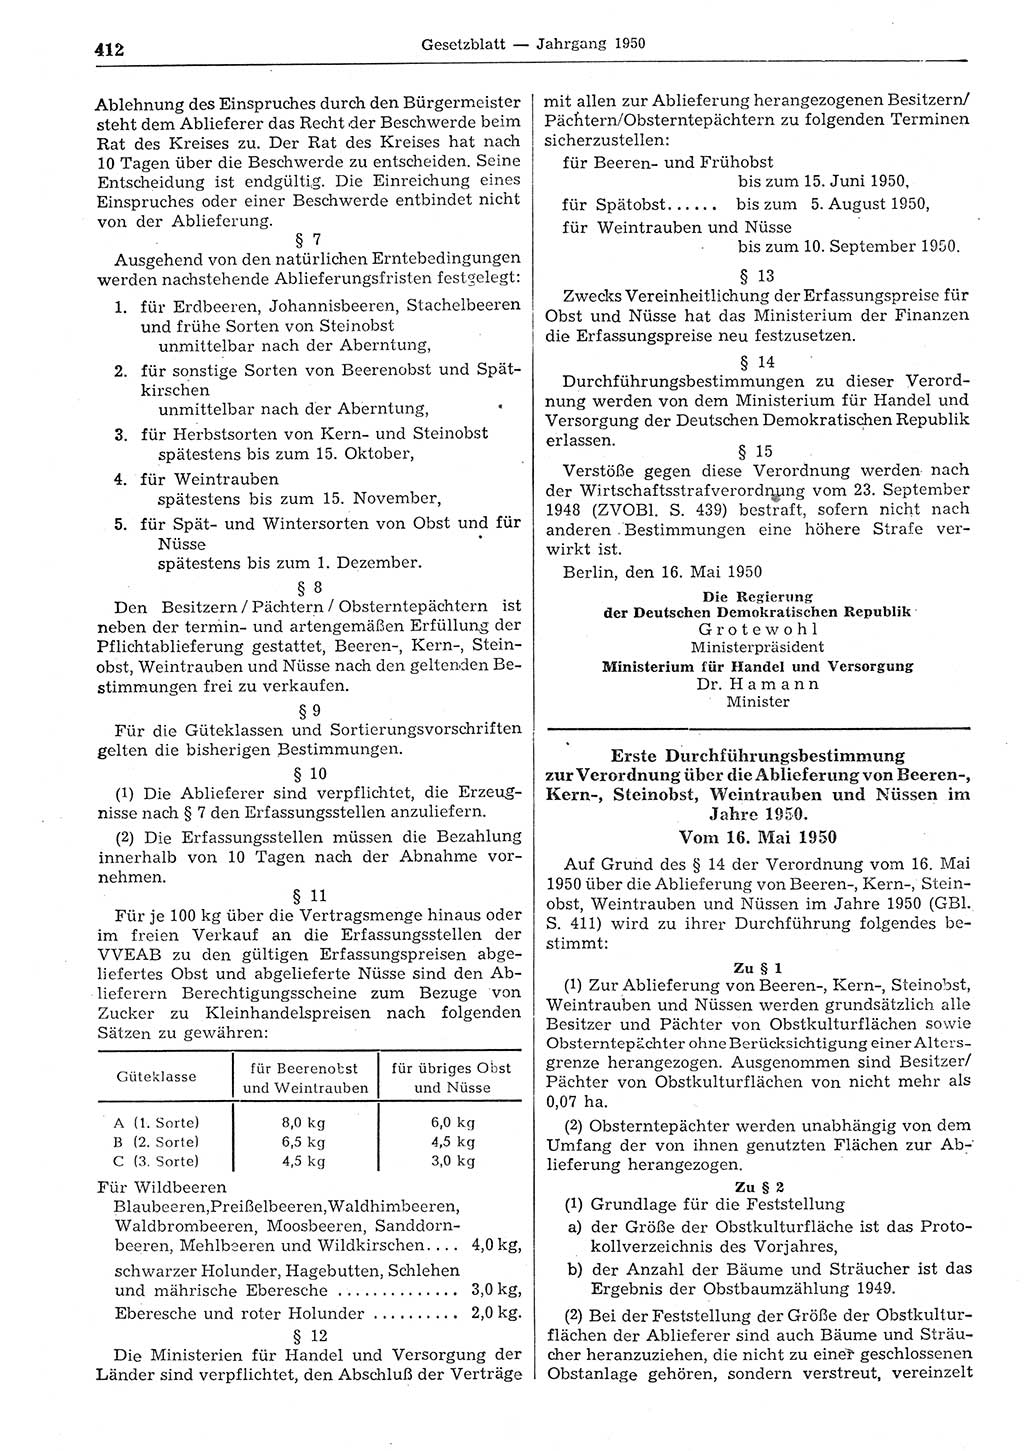 Gesetzblatt (GBl.) der Deutschen Demokratischen Republik (DDR) 1950, Seite 412 (GBl. DDR 1950, S. 412)